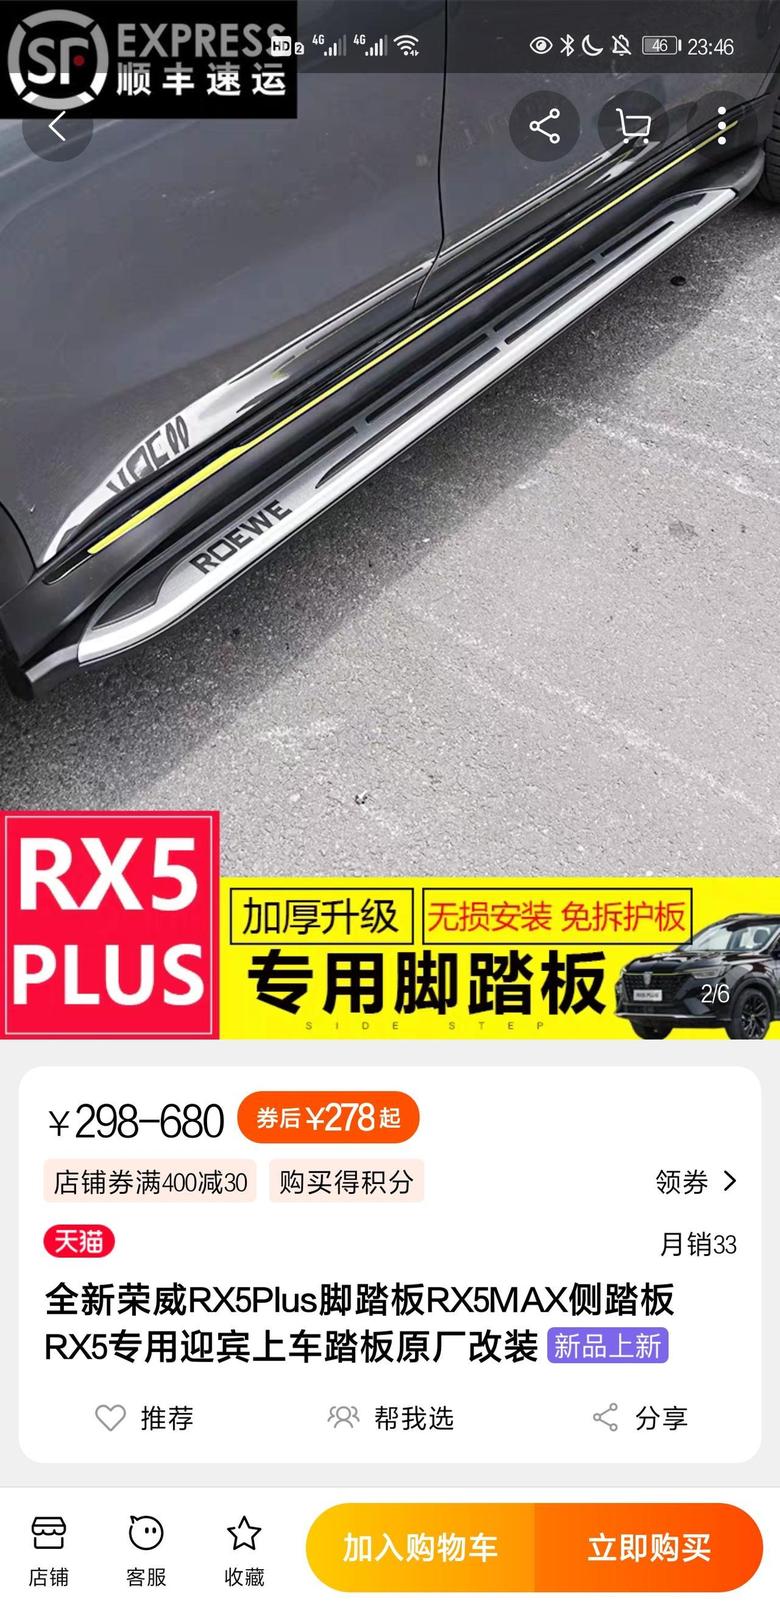 荣威erx5（混动） 大家有安装这样的脚踏板吗？我们混动车踏板安装是不是和燃油版的一样啊。网上都是卖rx5plus燃油版的踏板的。